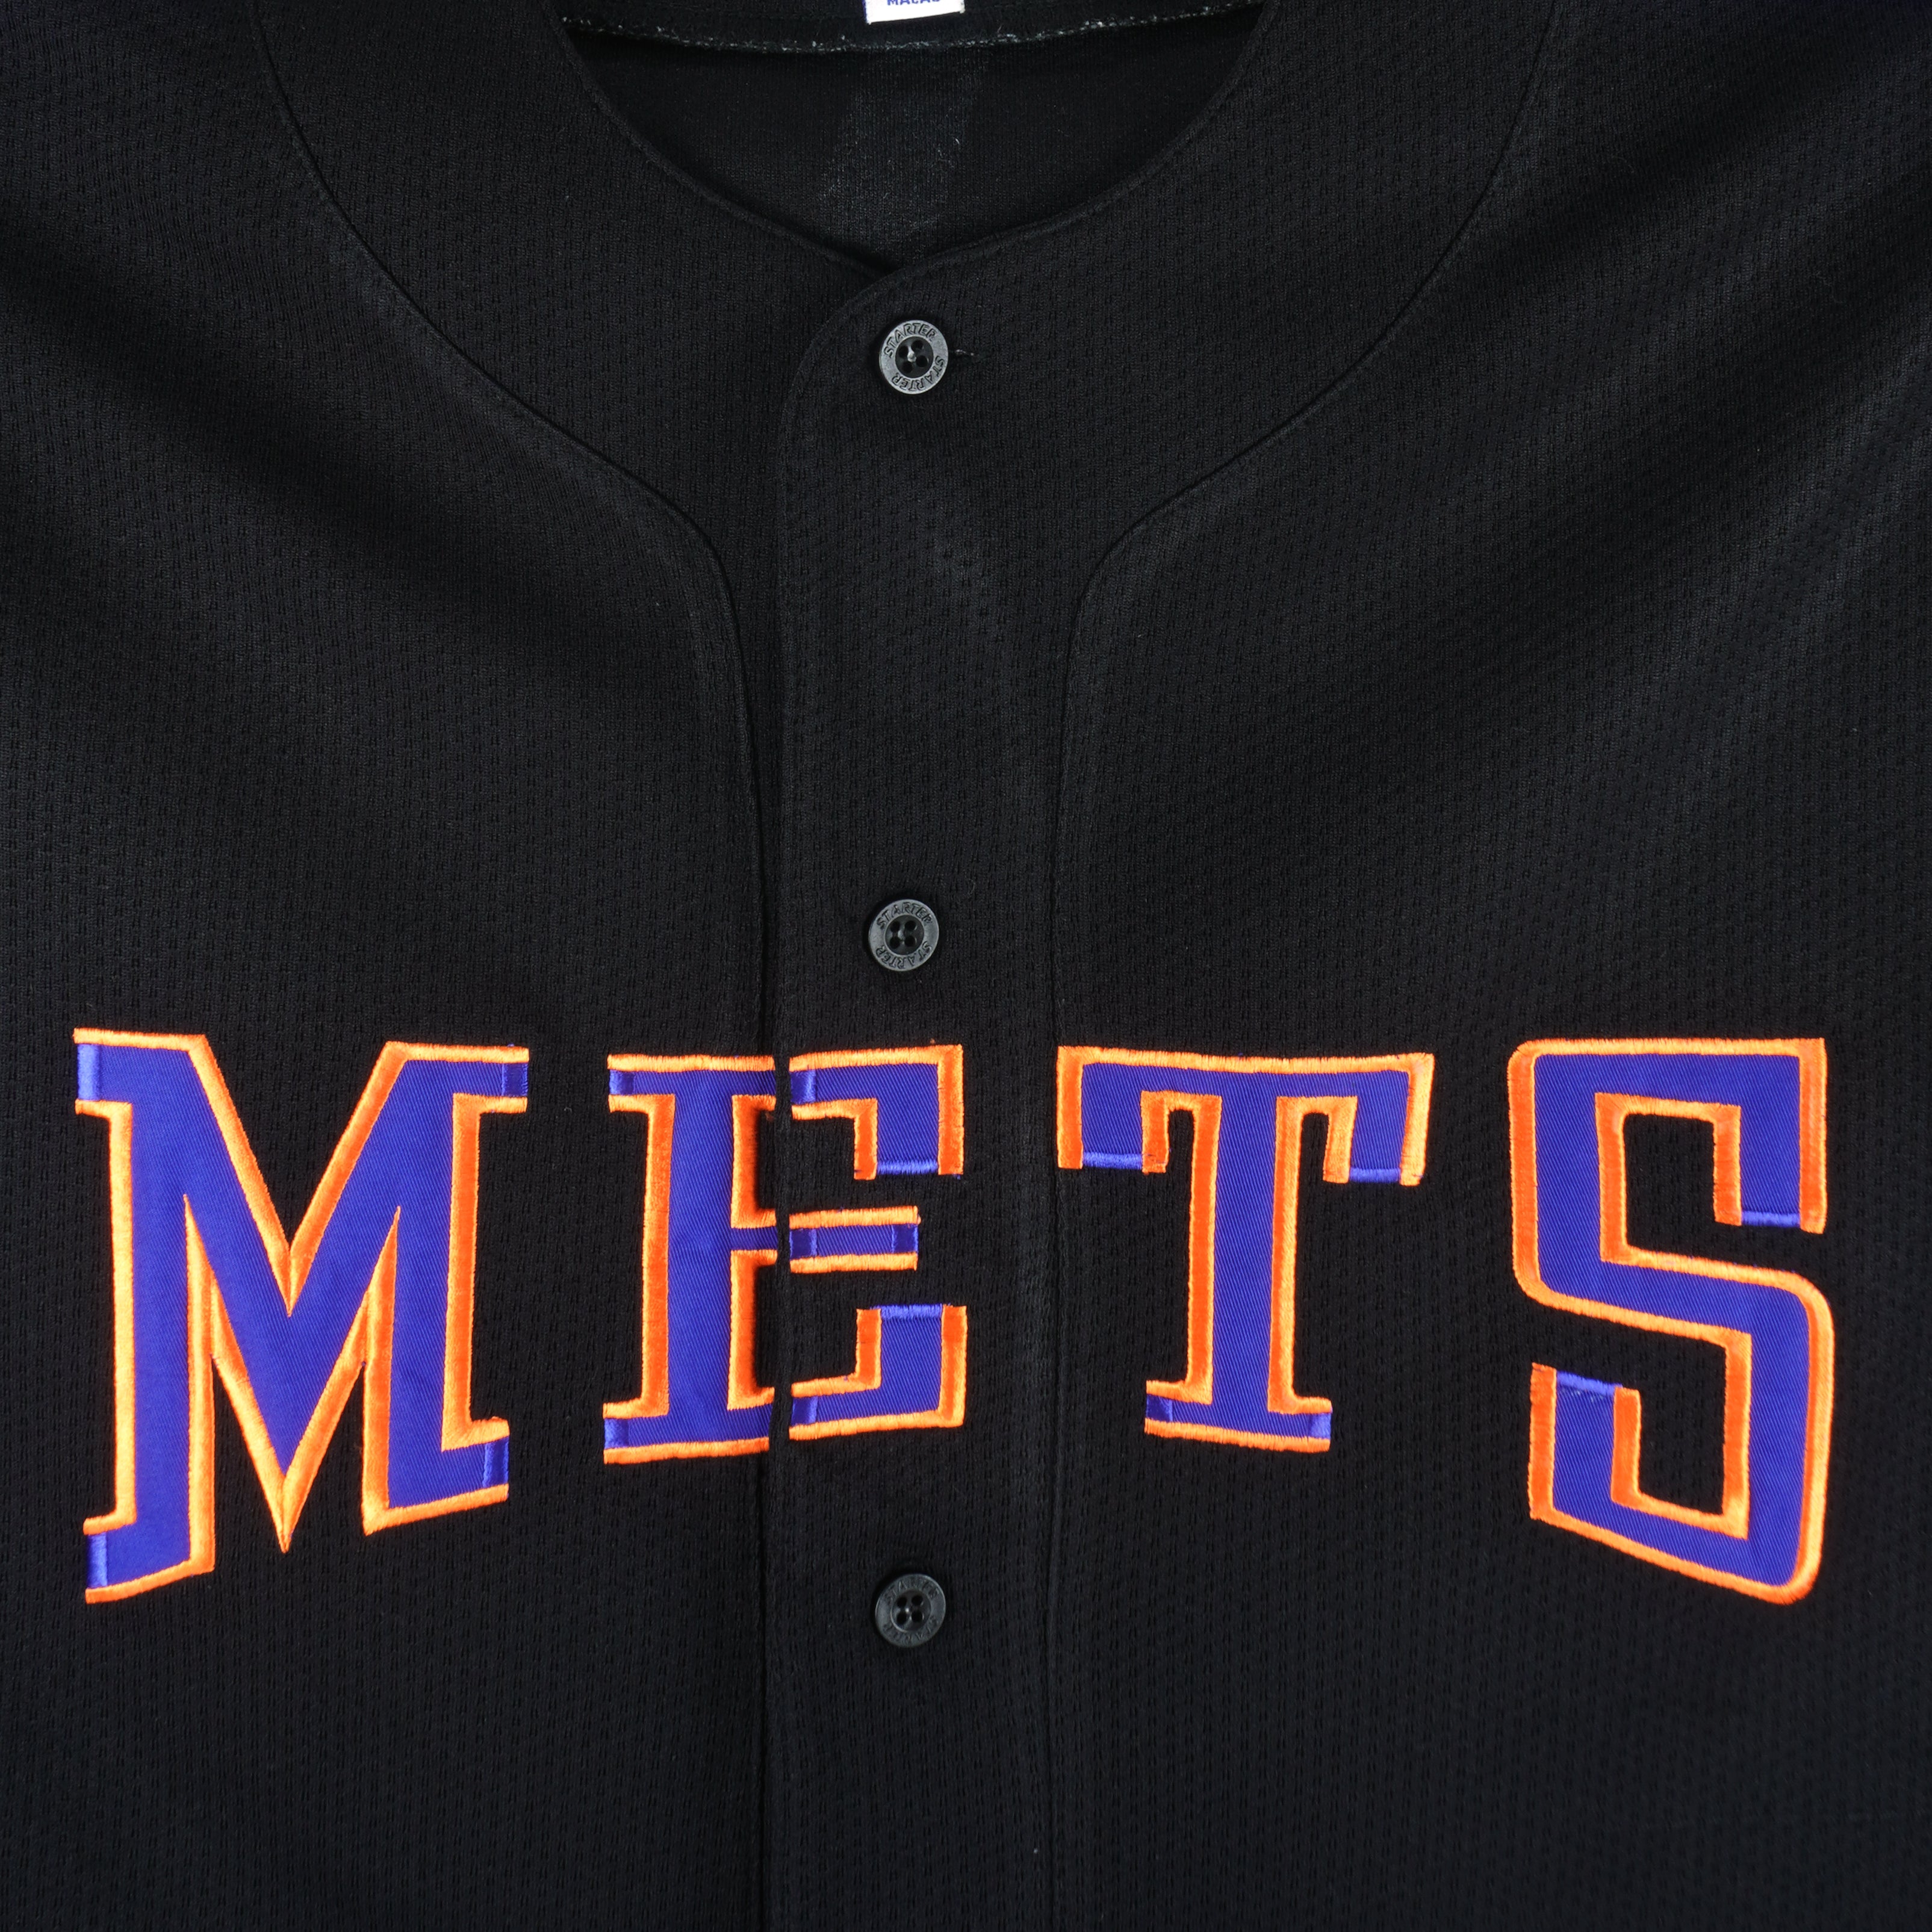 Stitch New York Mets Baseball Jersey -  Worldwide Shipping